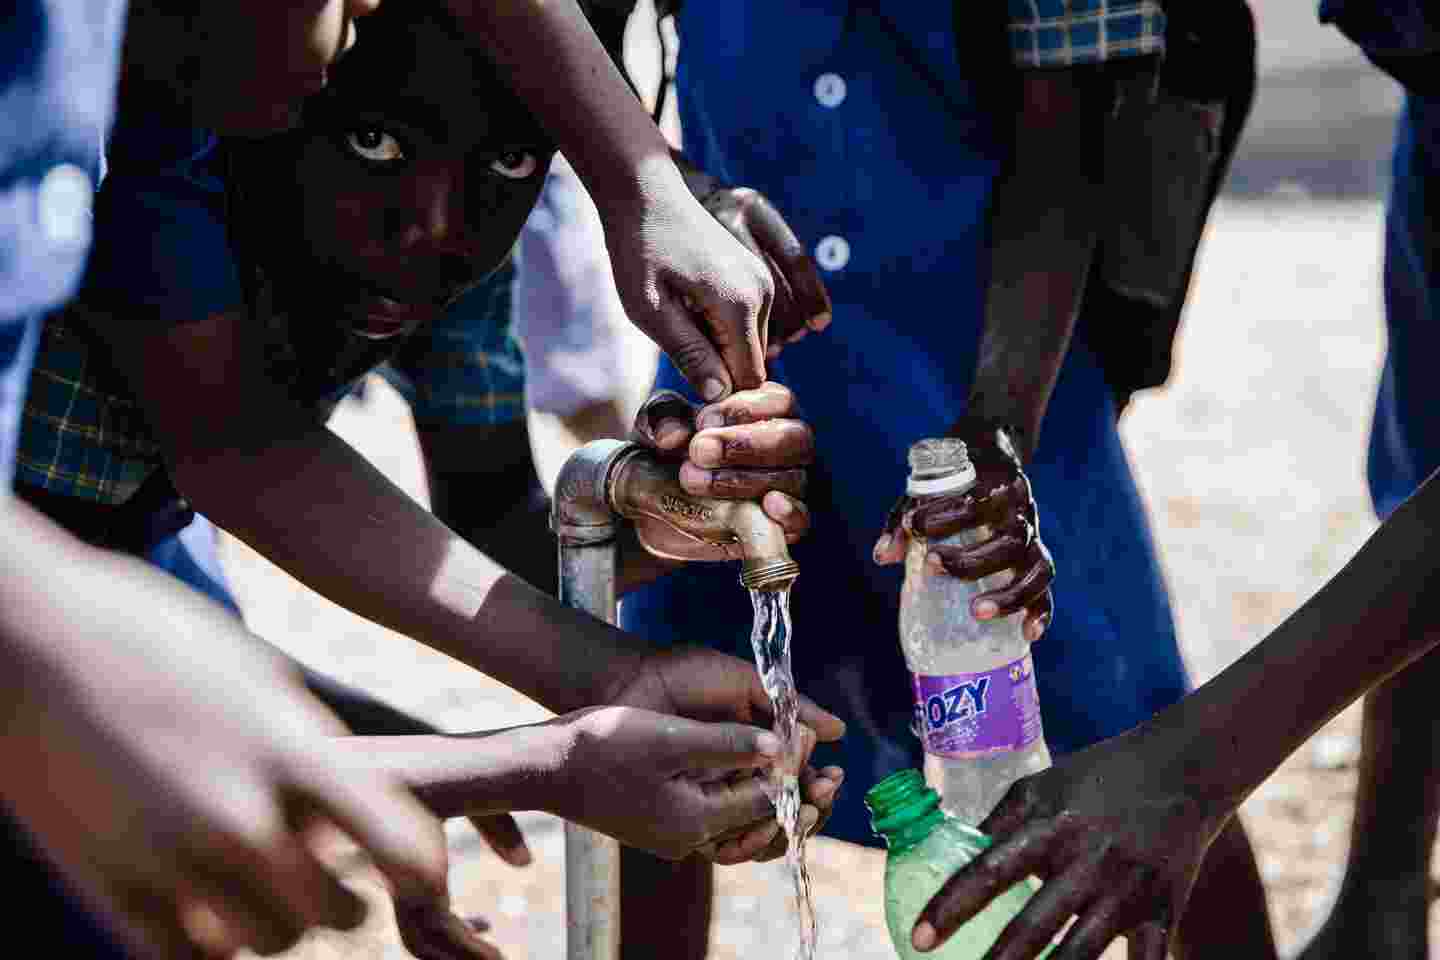 Children filling water bottles.